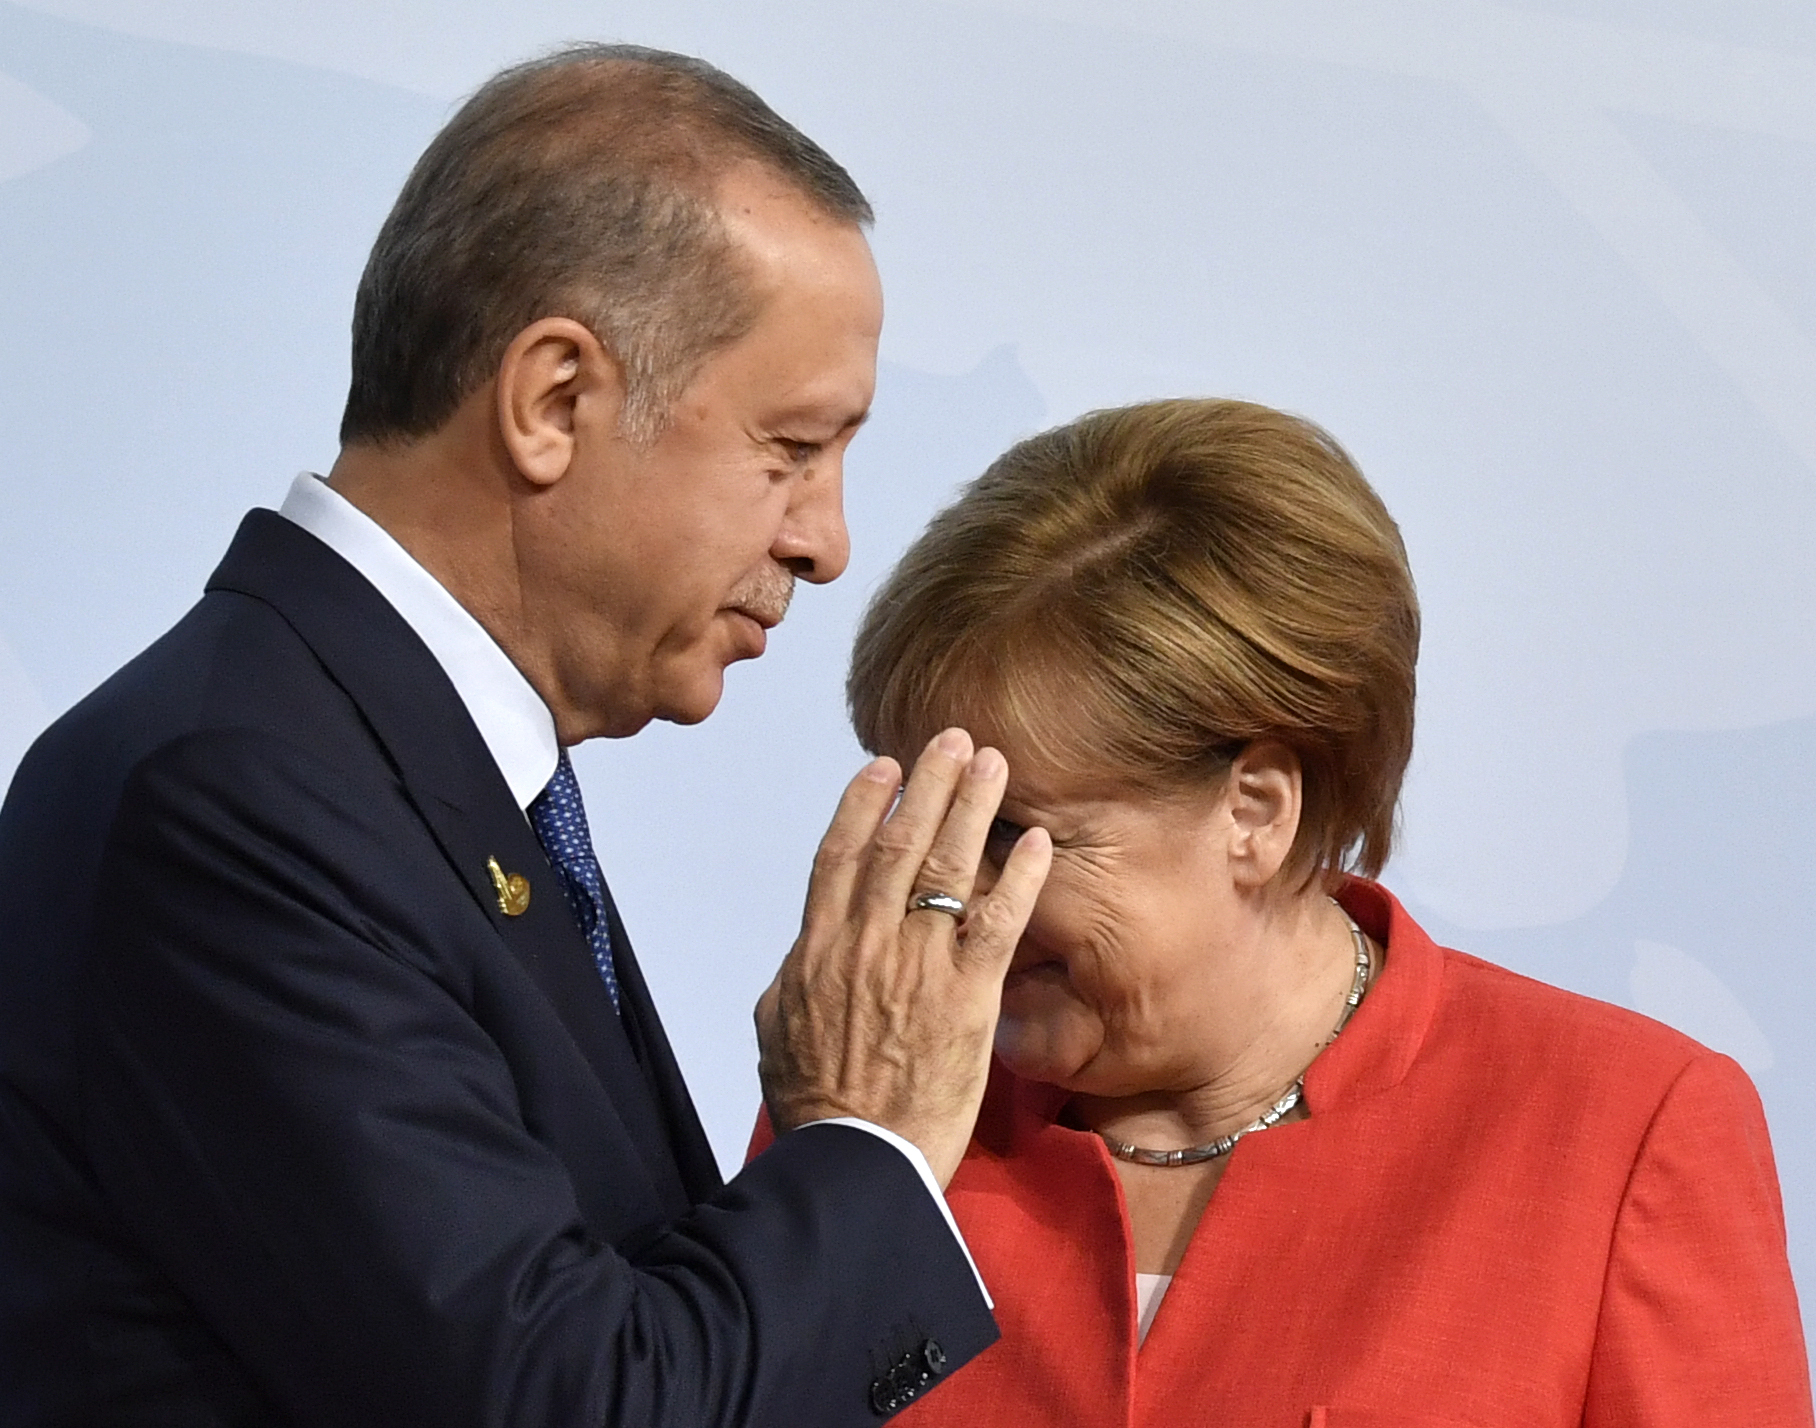 A német alkotmányvédelem szerint a török titkosszolgálatok aggasztóan aktívak náluk